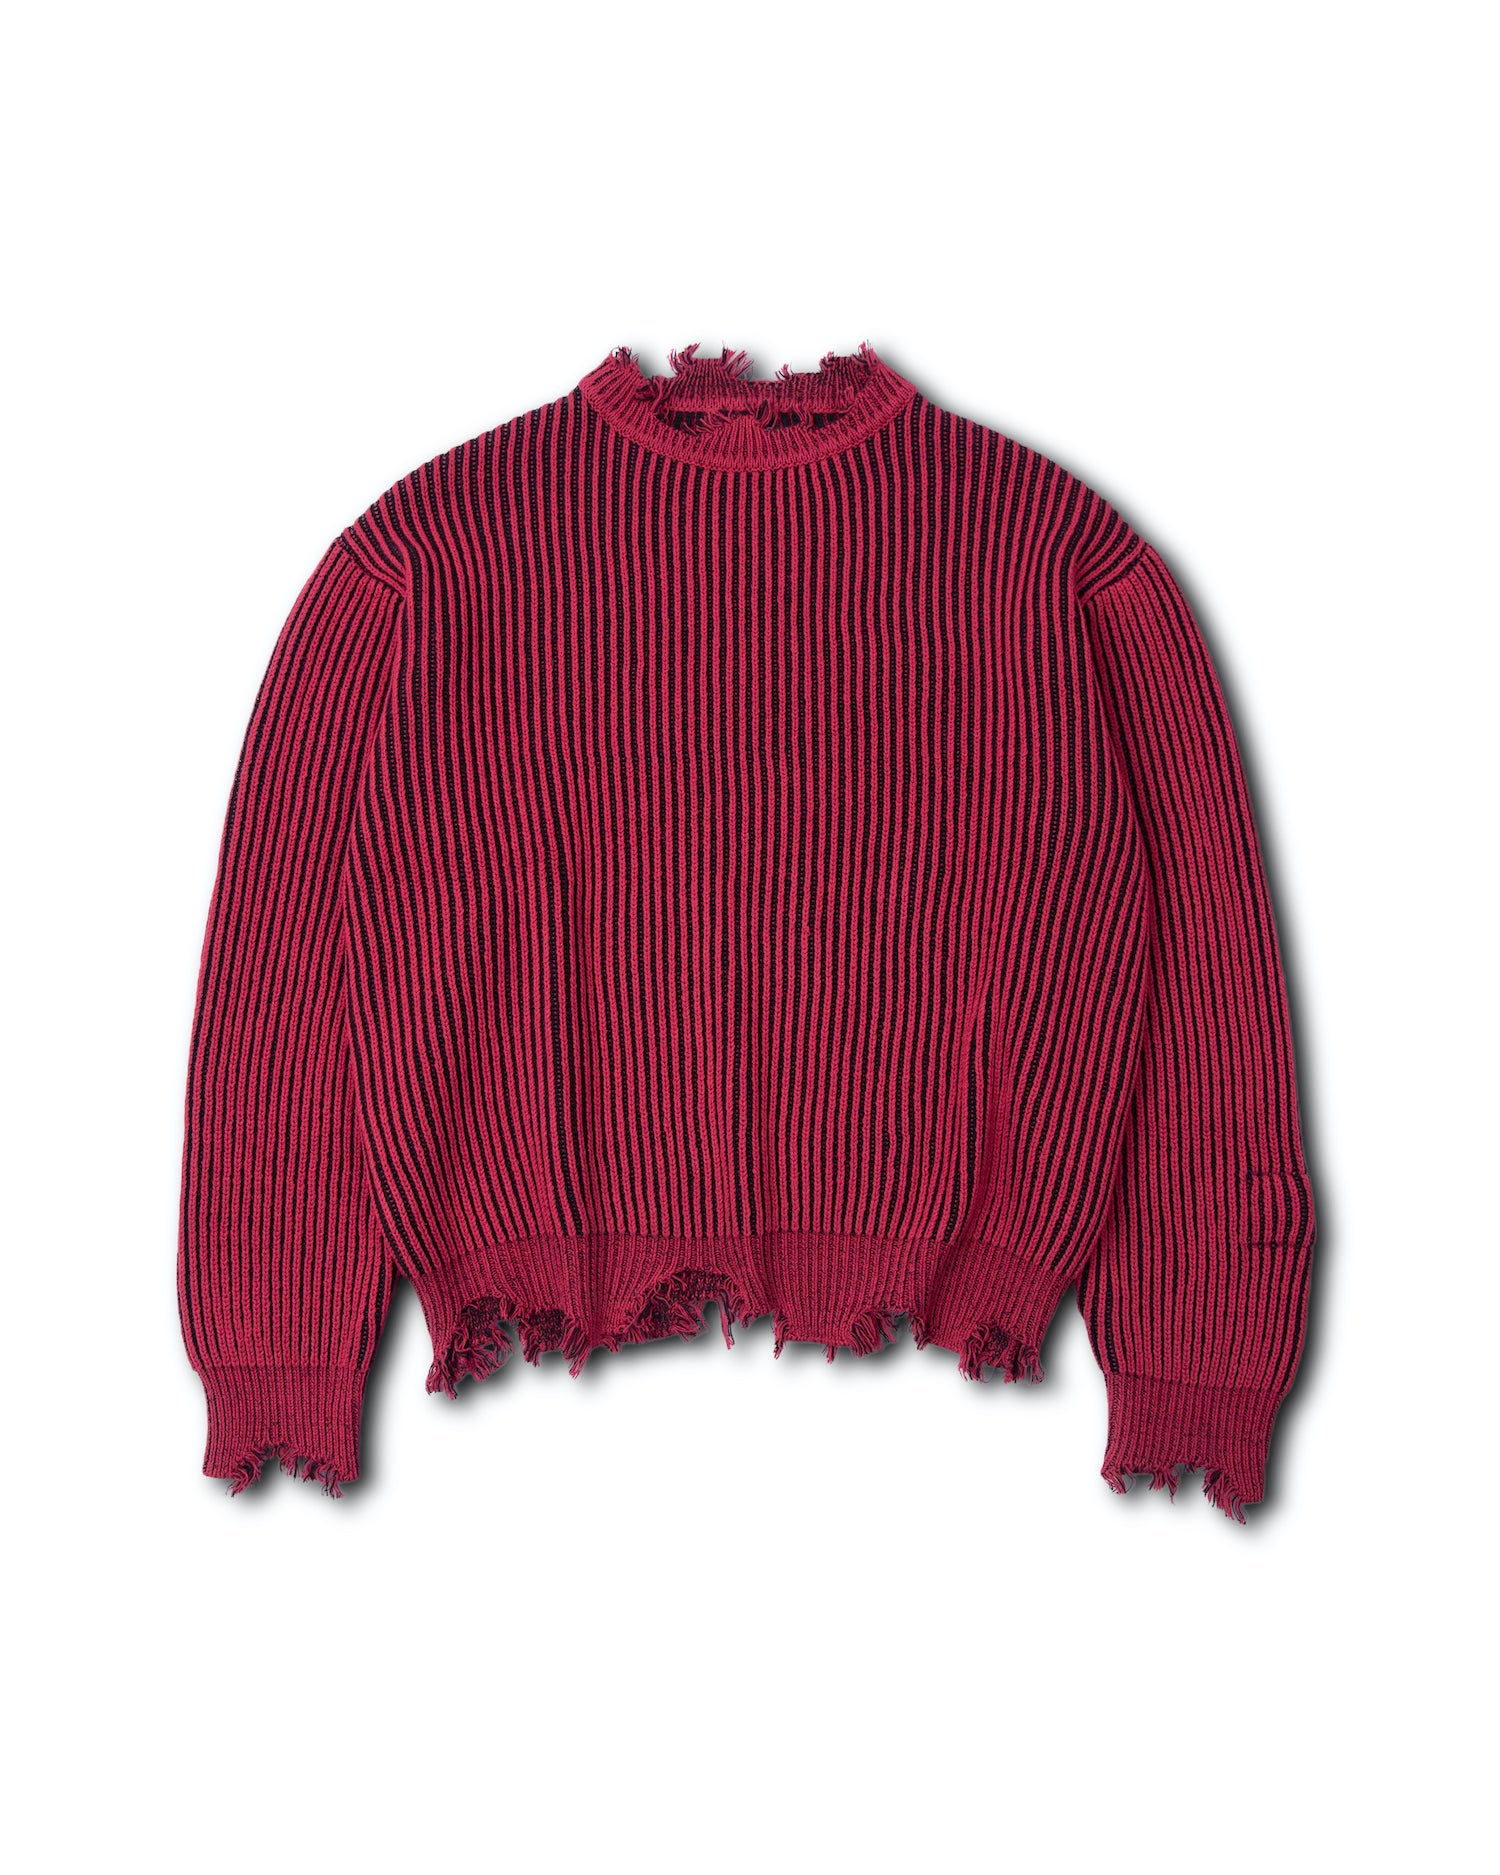 b-r-distressed-rib-knit-sweater-goldie-astoud